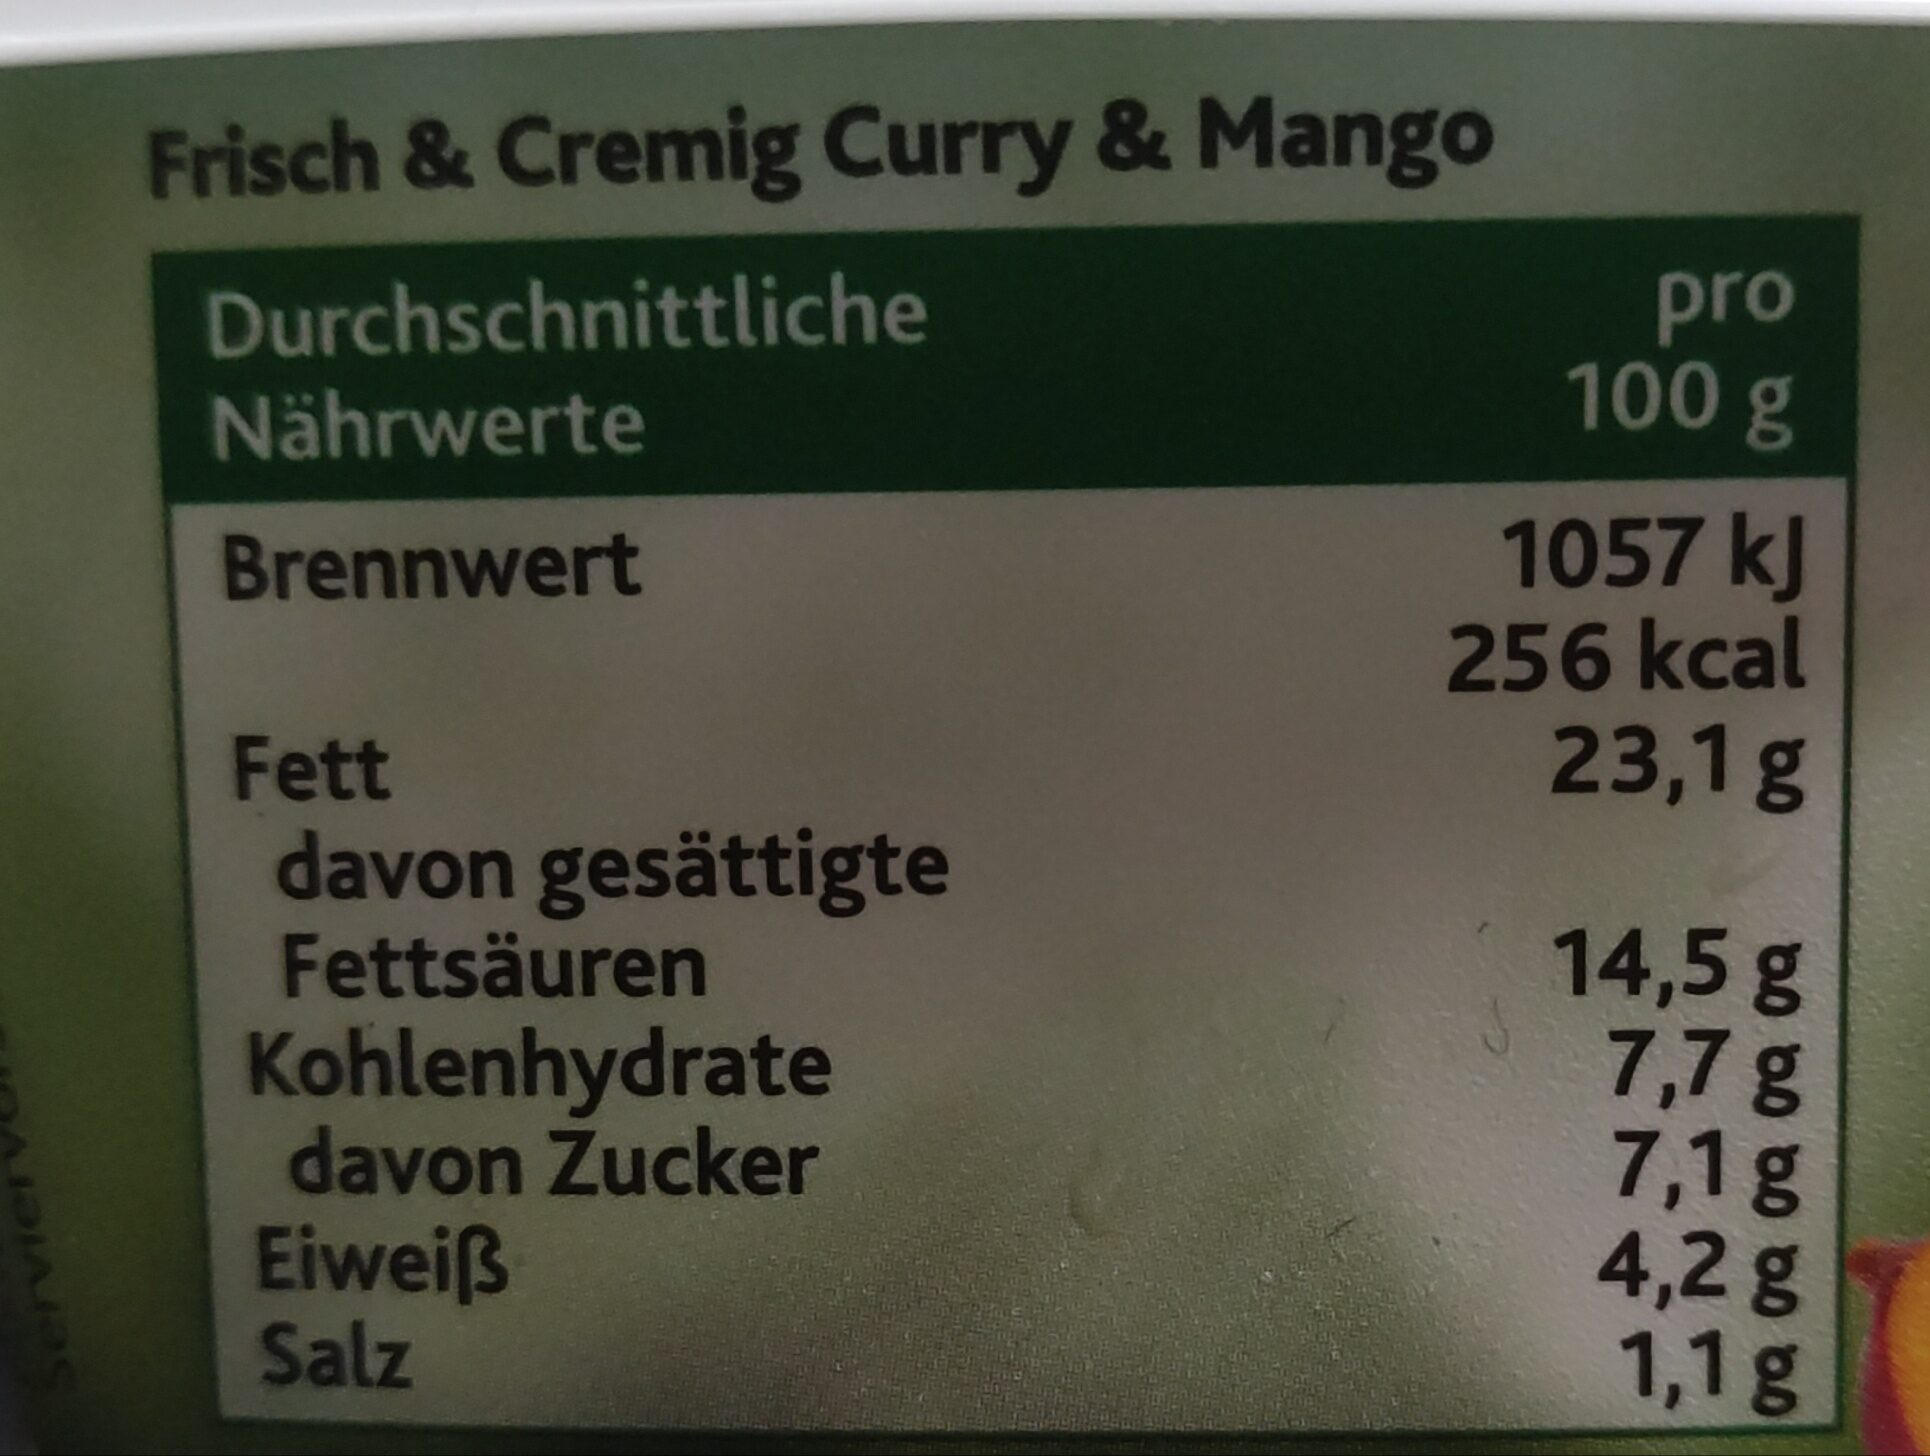 Frisch & Cremig - Curry & Mango - Nährwertangaben